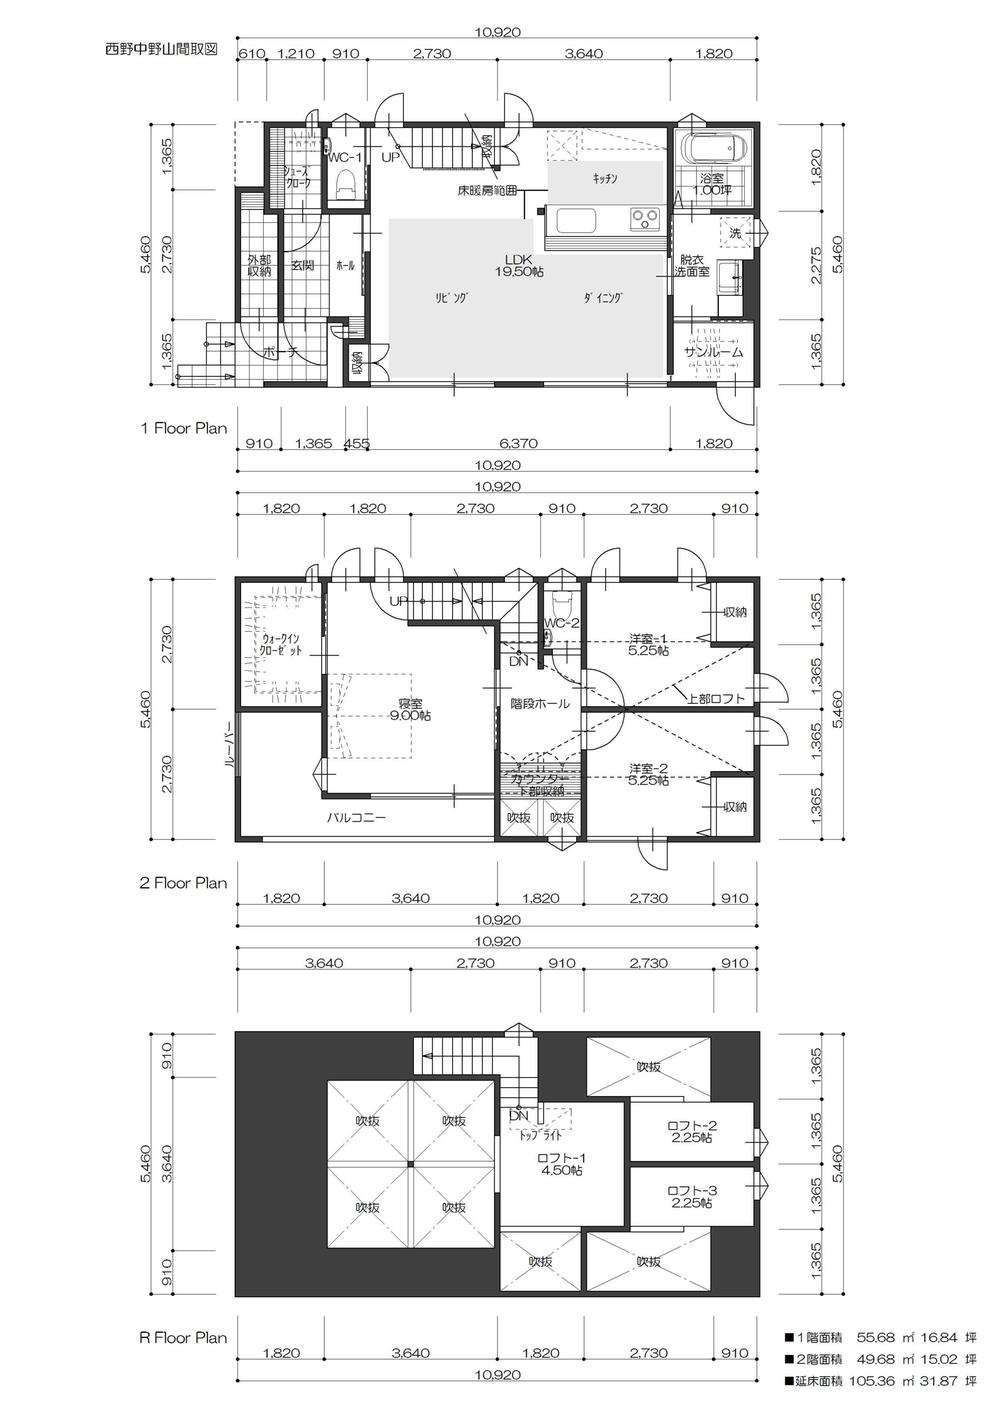 Floor plan. 38,680,000 yen, 3LDK, Land area 160.23 sq m , Building area 59.62 sq m bedroom ・ With loft in both the children's room